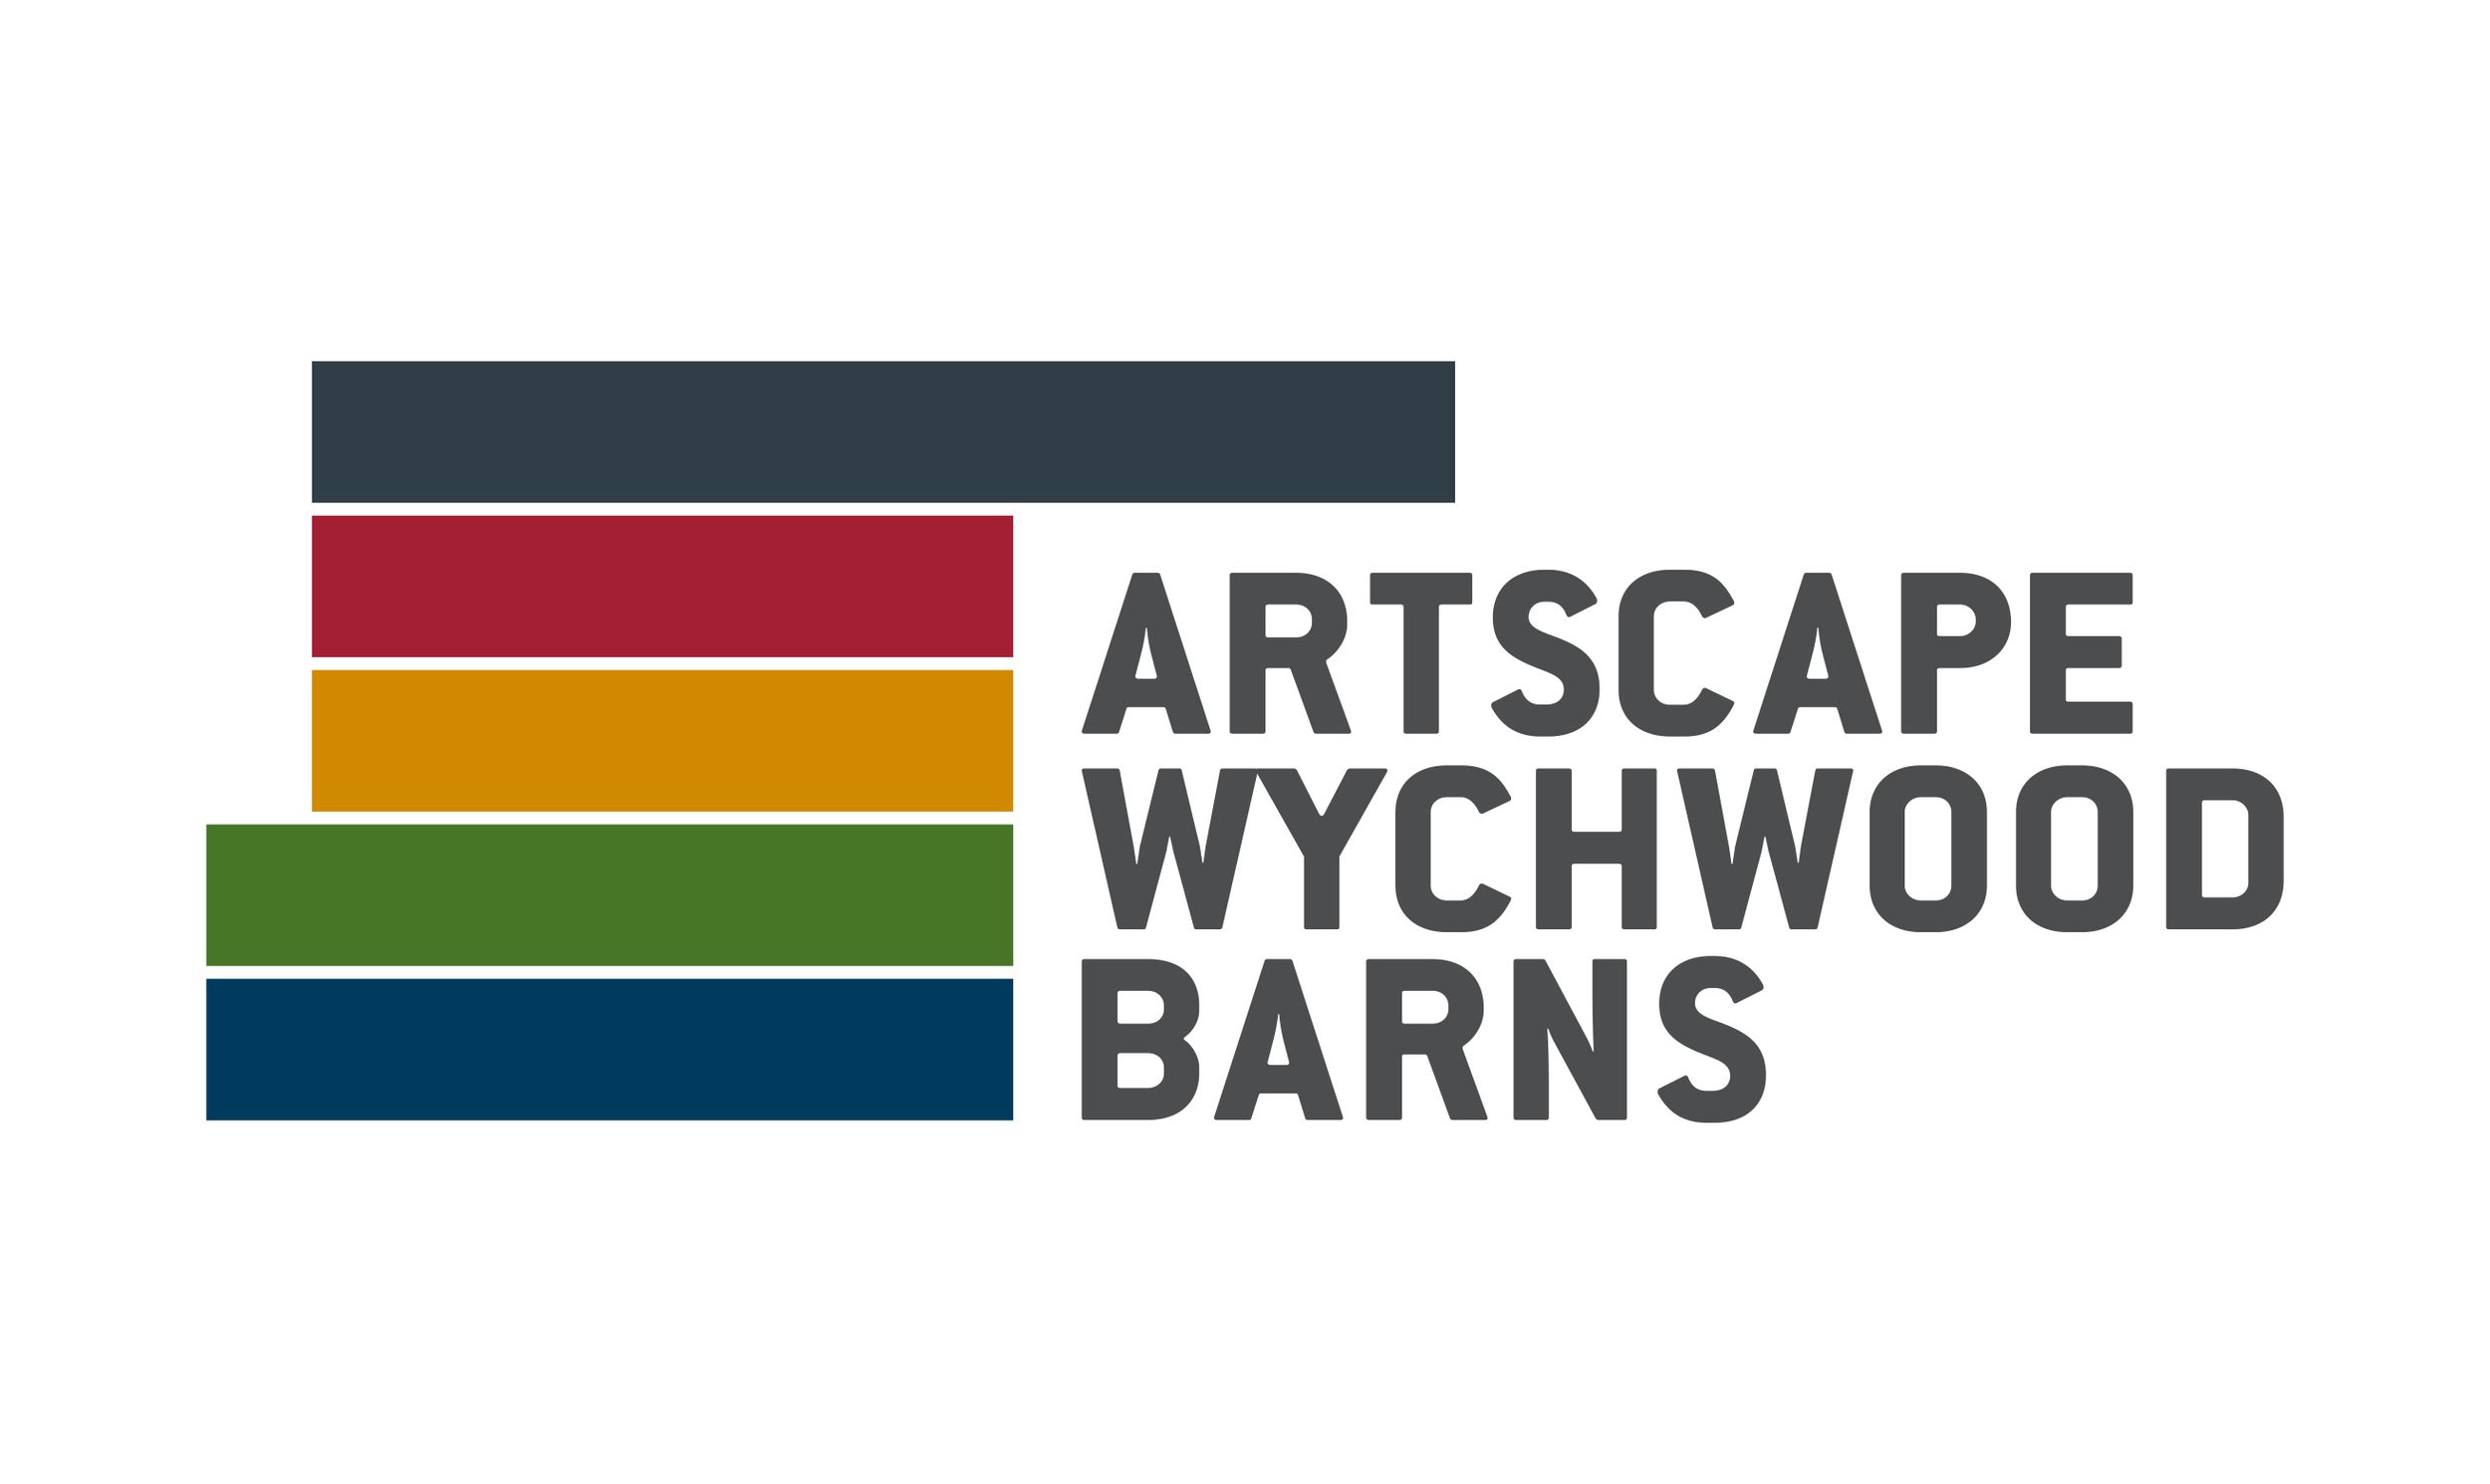 Artscape Wychwood Barns